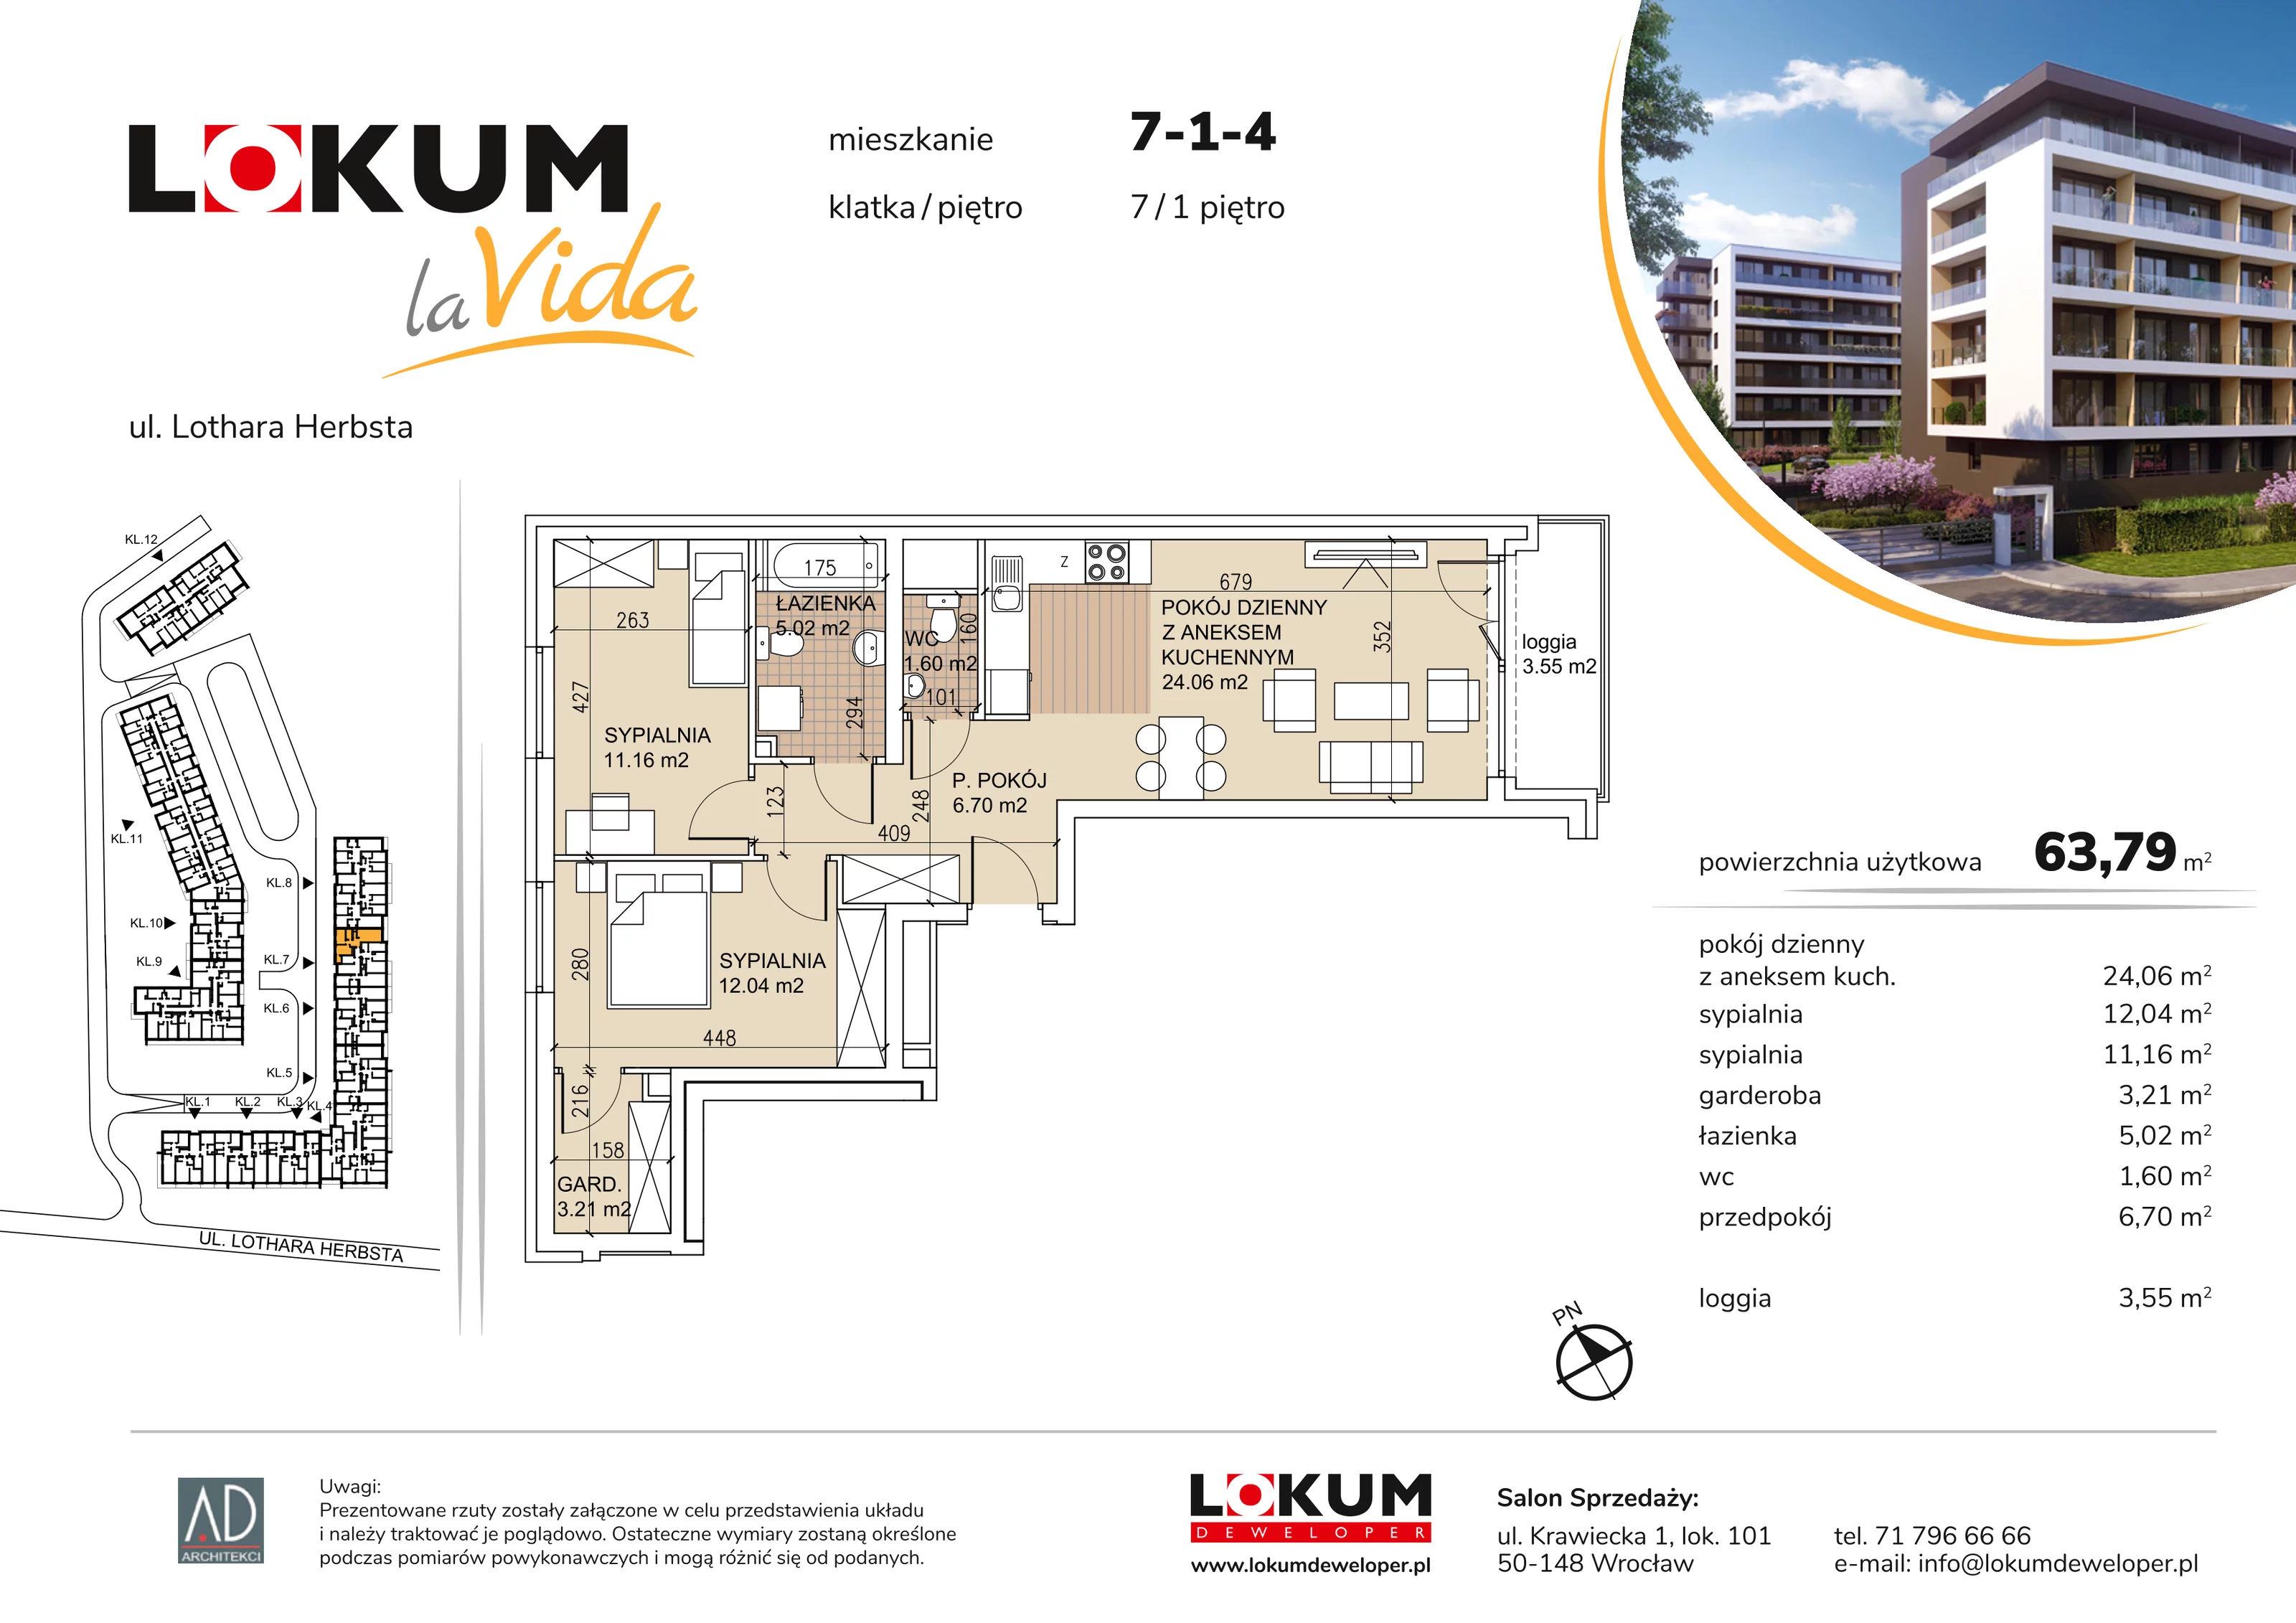 Mieszkanie 63,79 m², piętro 1, oferta nr 7-1-4, Lokum la Vida, Wrocław, Sołtysowice, ul. Lothara Herbsta